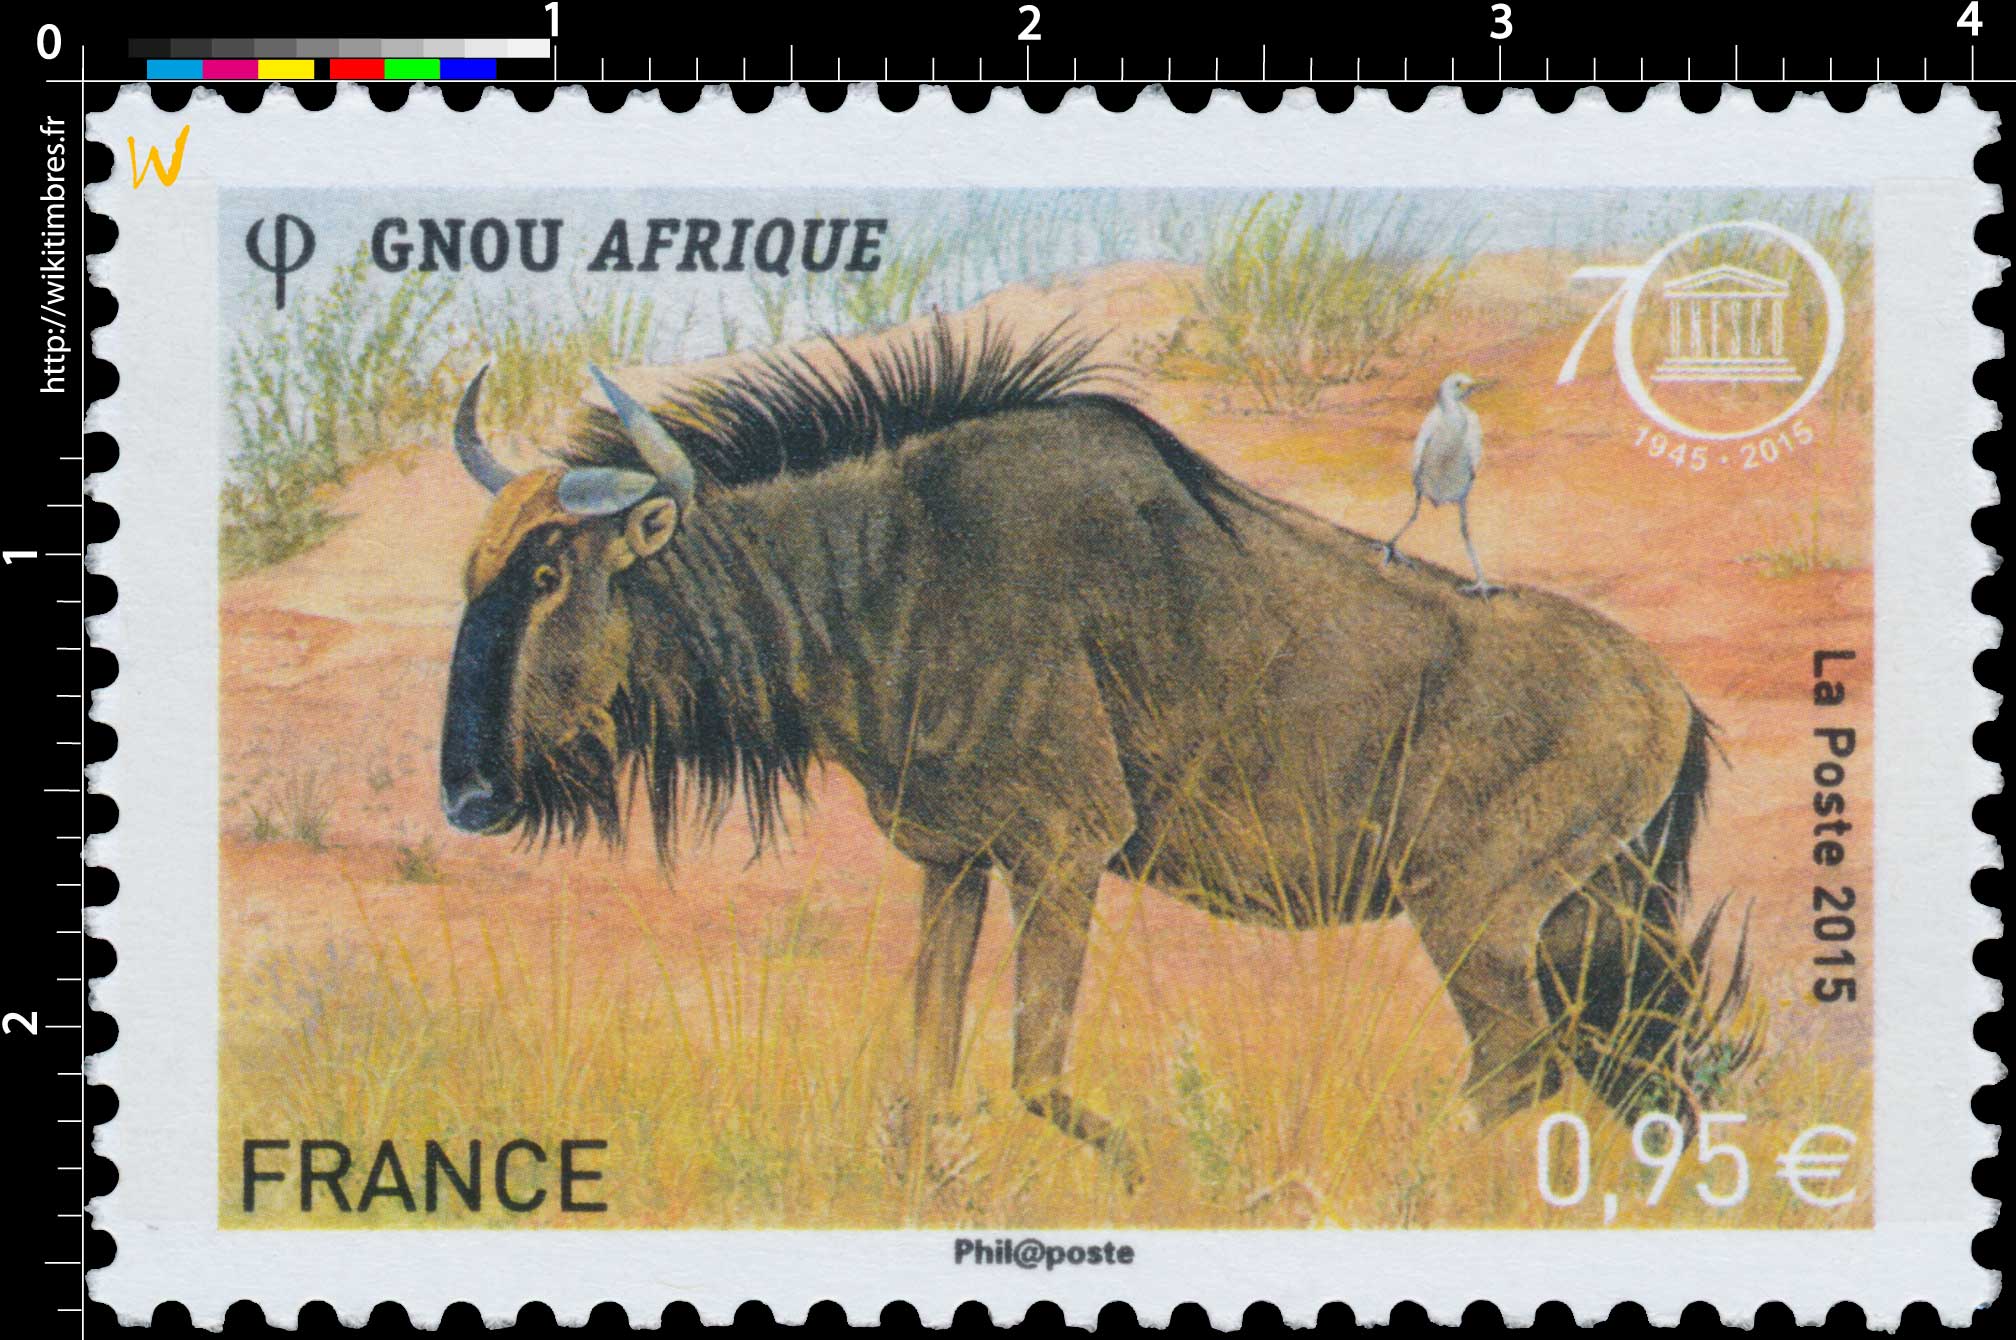 2015 UNESCO GNOU AFRIQUE